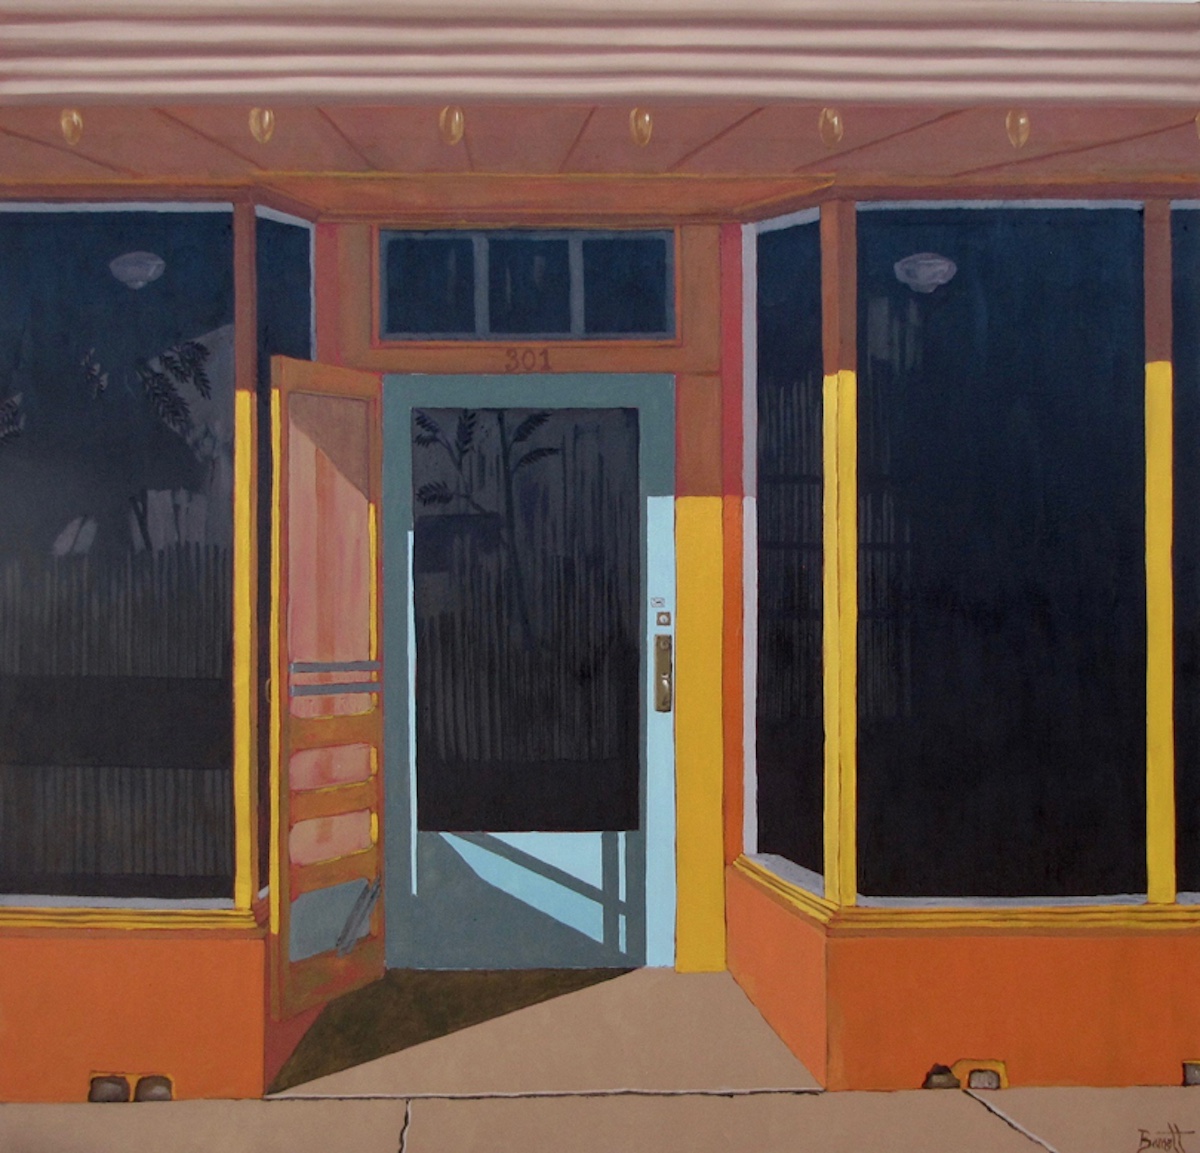 Dave Barnett's work titled 301 Main Street at RioBravoFineArt